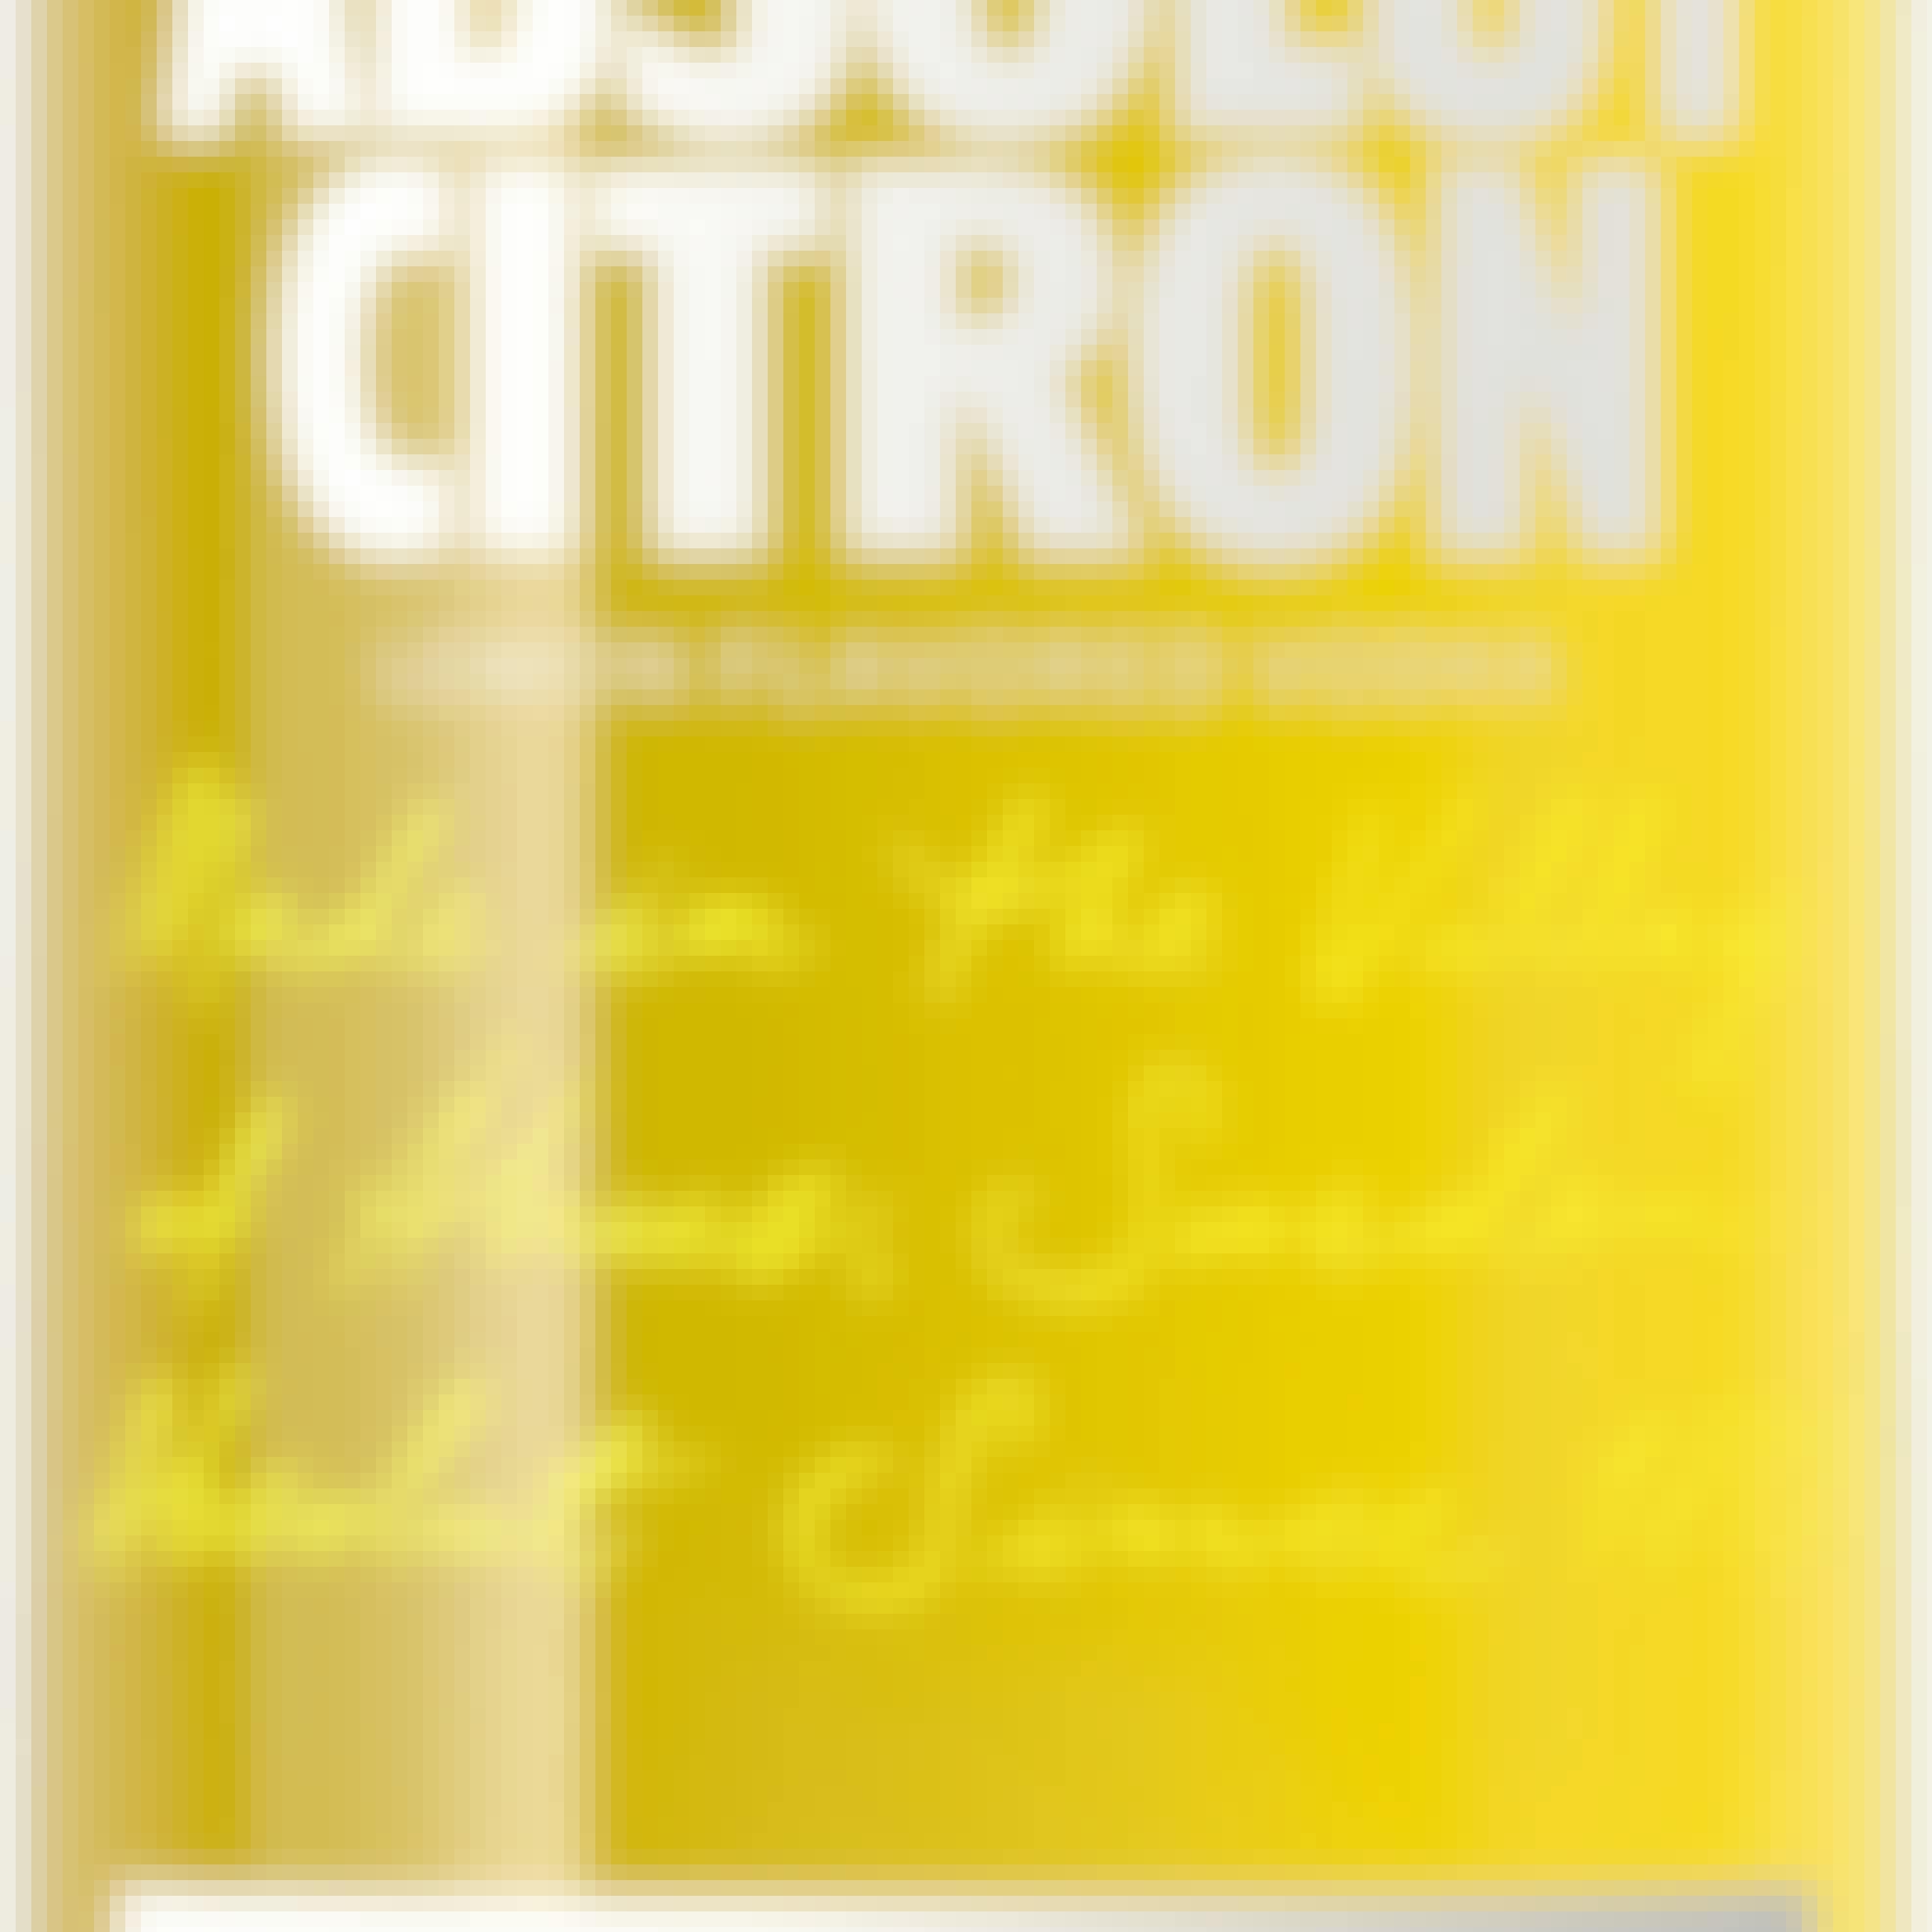 Absolut Citron Vodka 1L